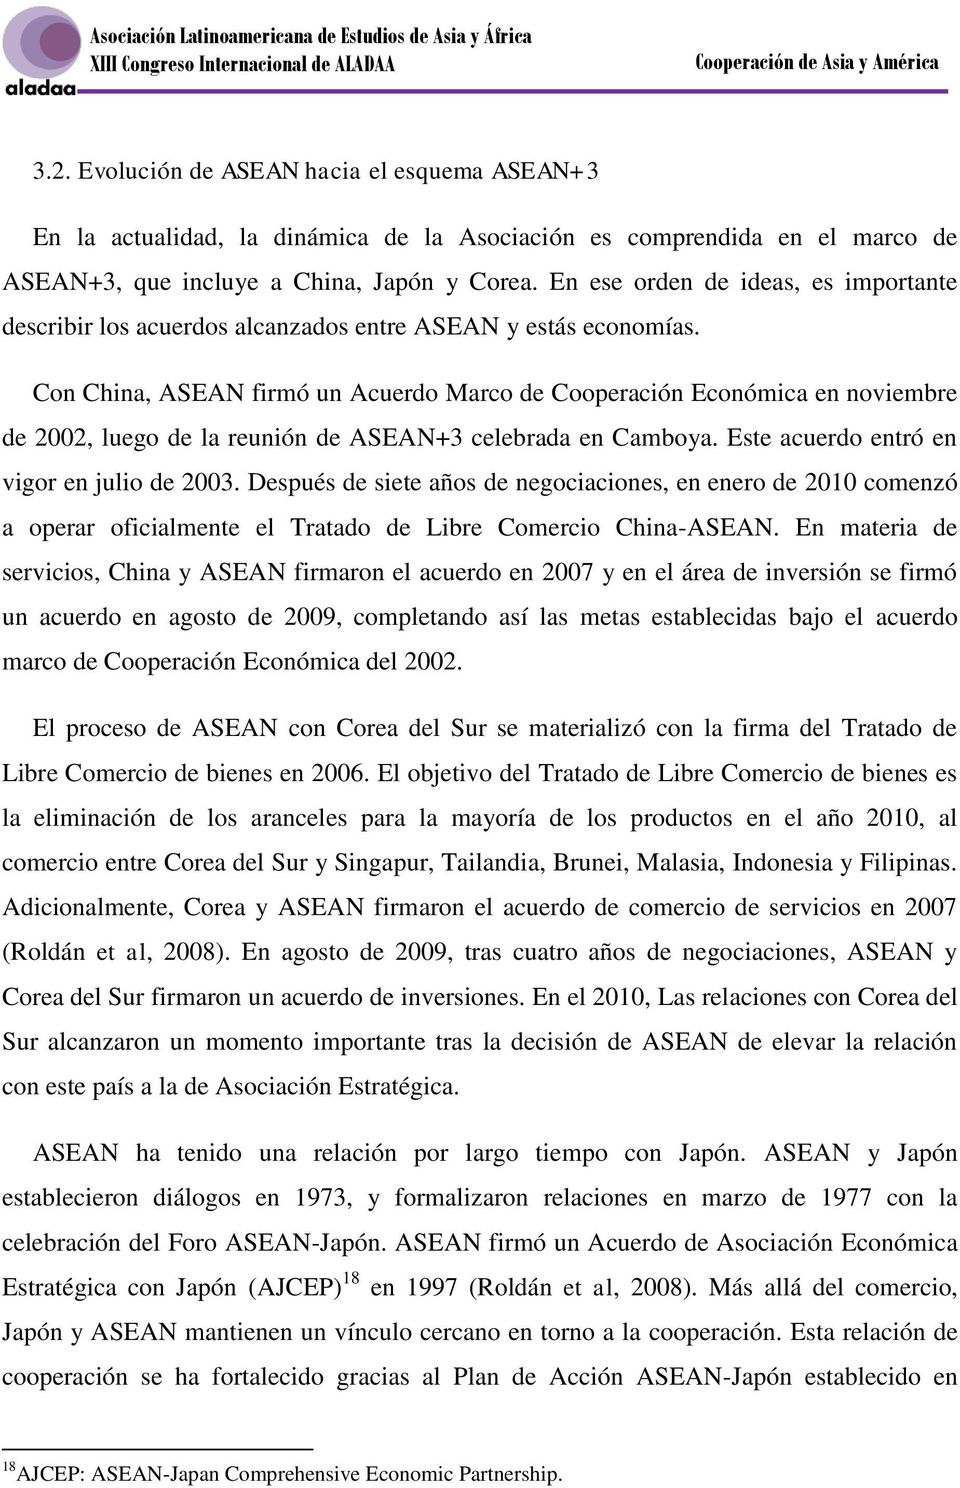 Con China, ASEAN firmó un Acuerdo Marco de Cooperación Económica en noviembre de 2002, luego de la reunión de ASEAN+3 celebrada en Camboya. Este acuerdo entró en vigor en julio de 2003.